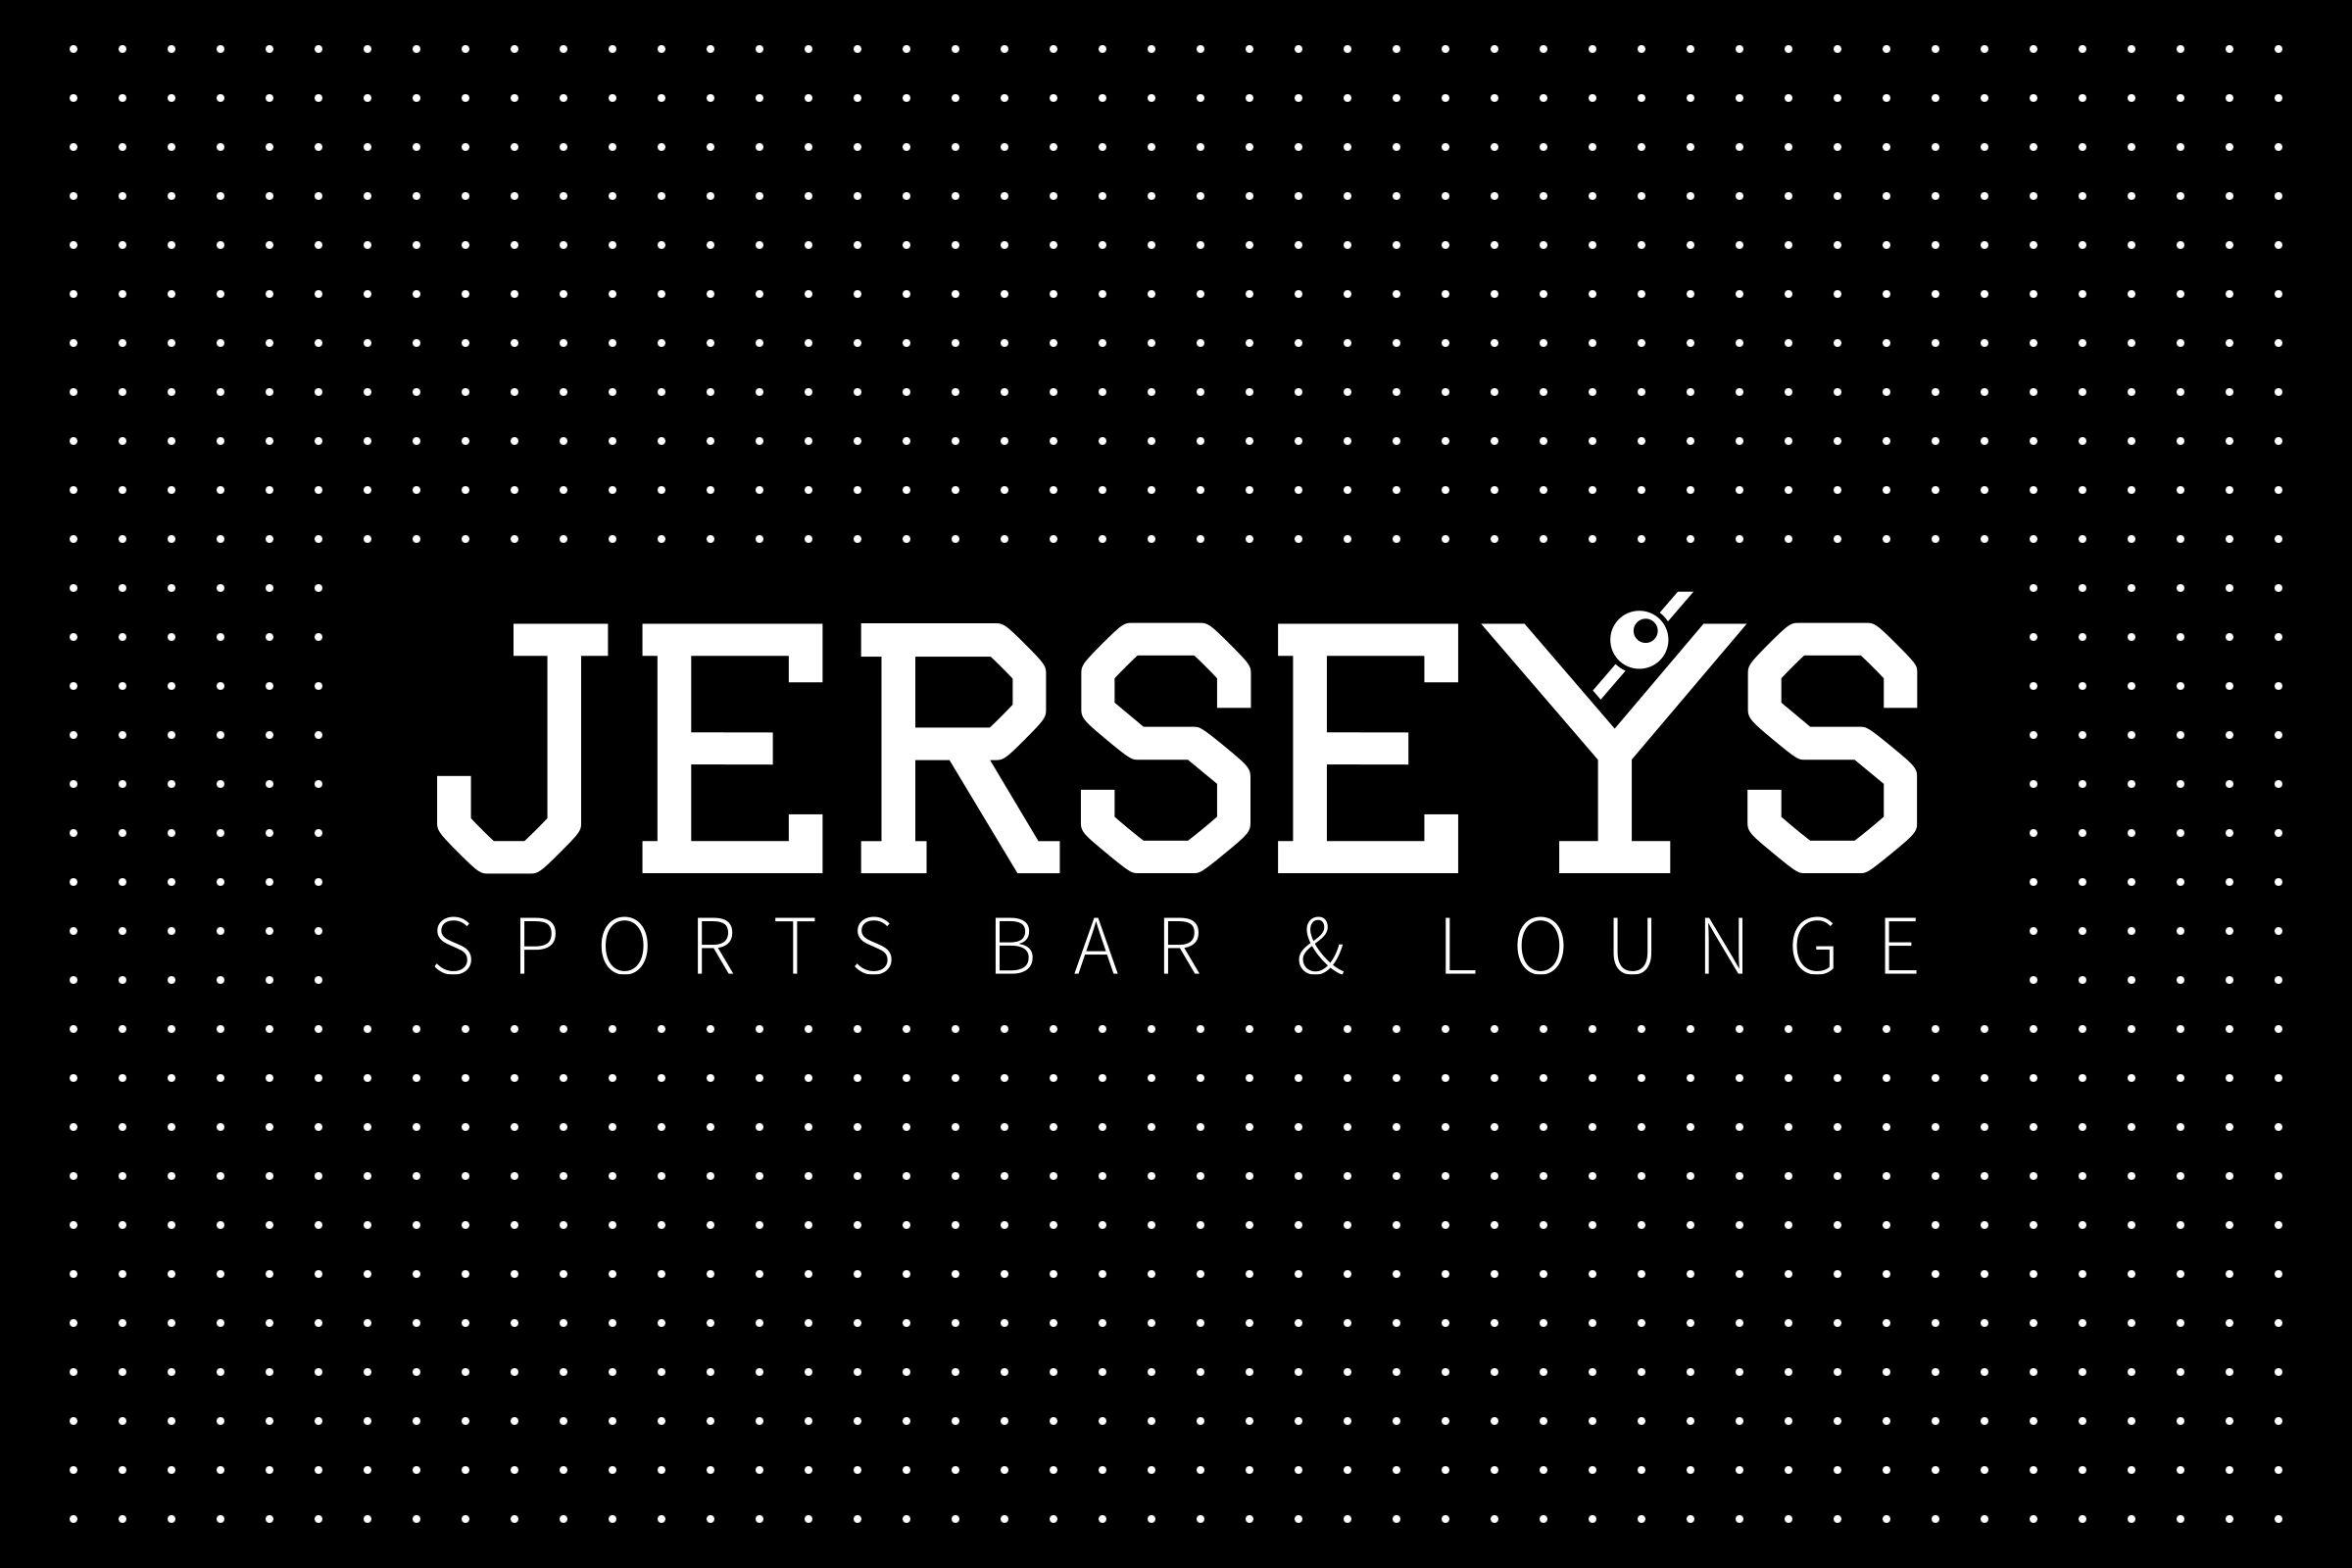 Opposite Logo - Jersey's